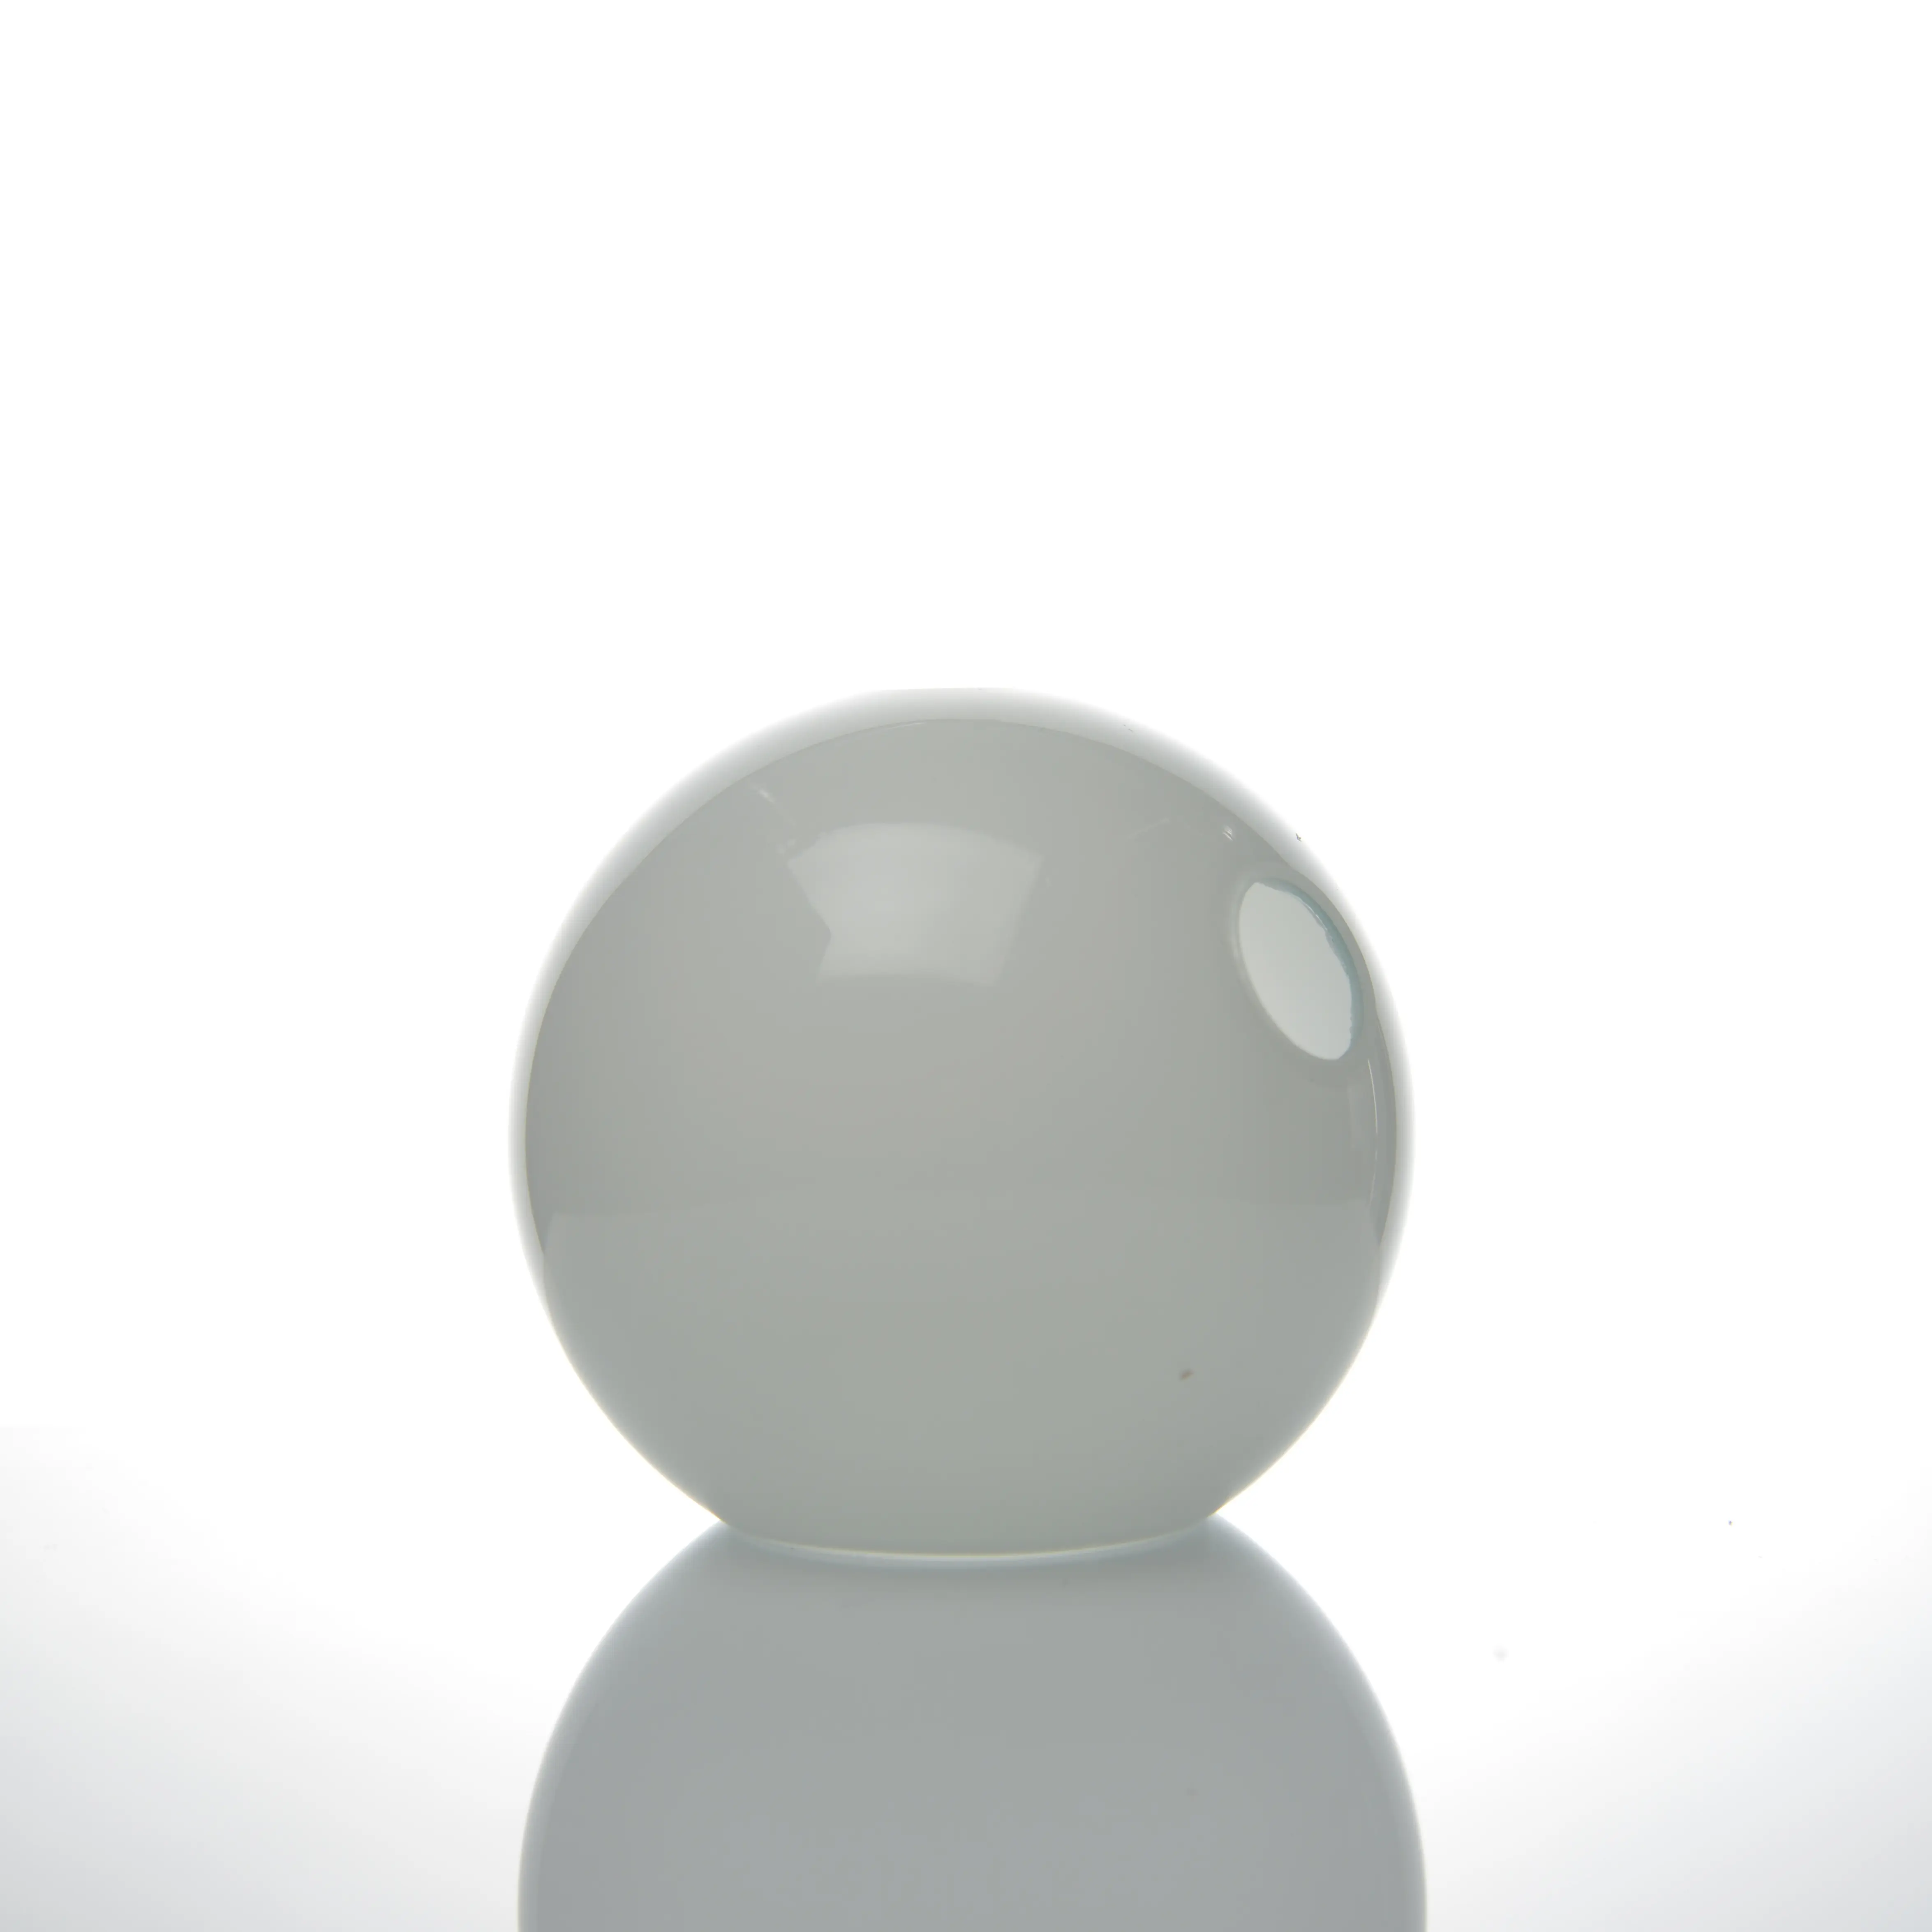 Üretici el üfleme özel buzlu cam abajur yarım kubbe 12 Cm çap cam abajur beyaz küre G9 ile lambalar için